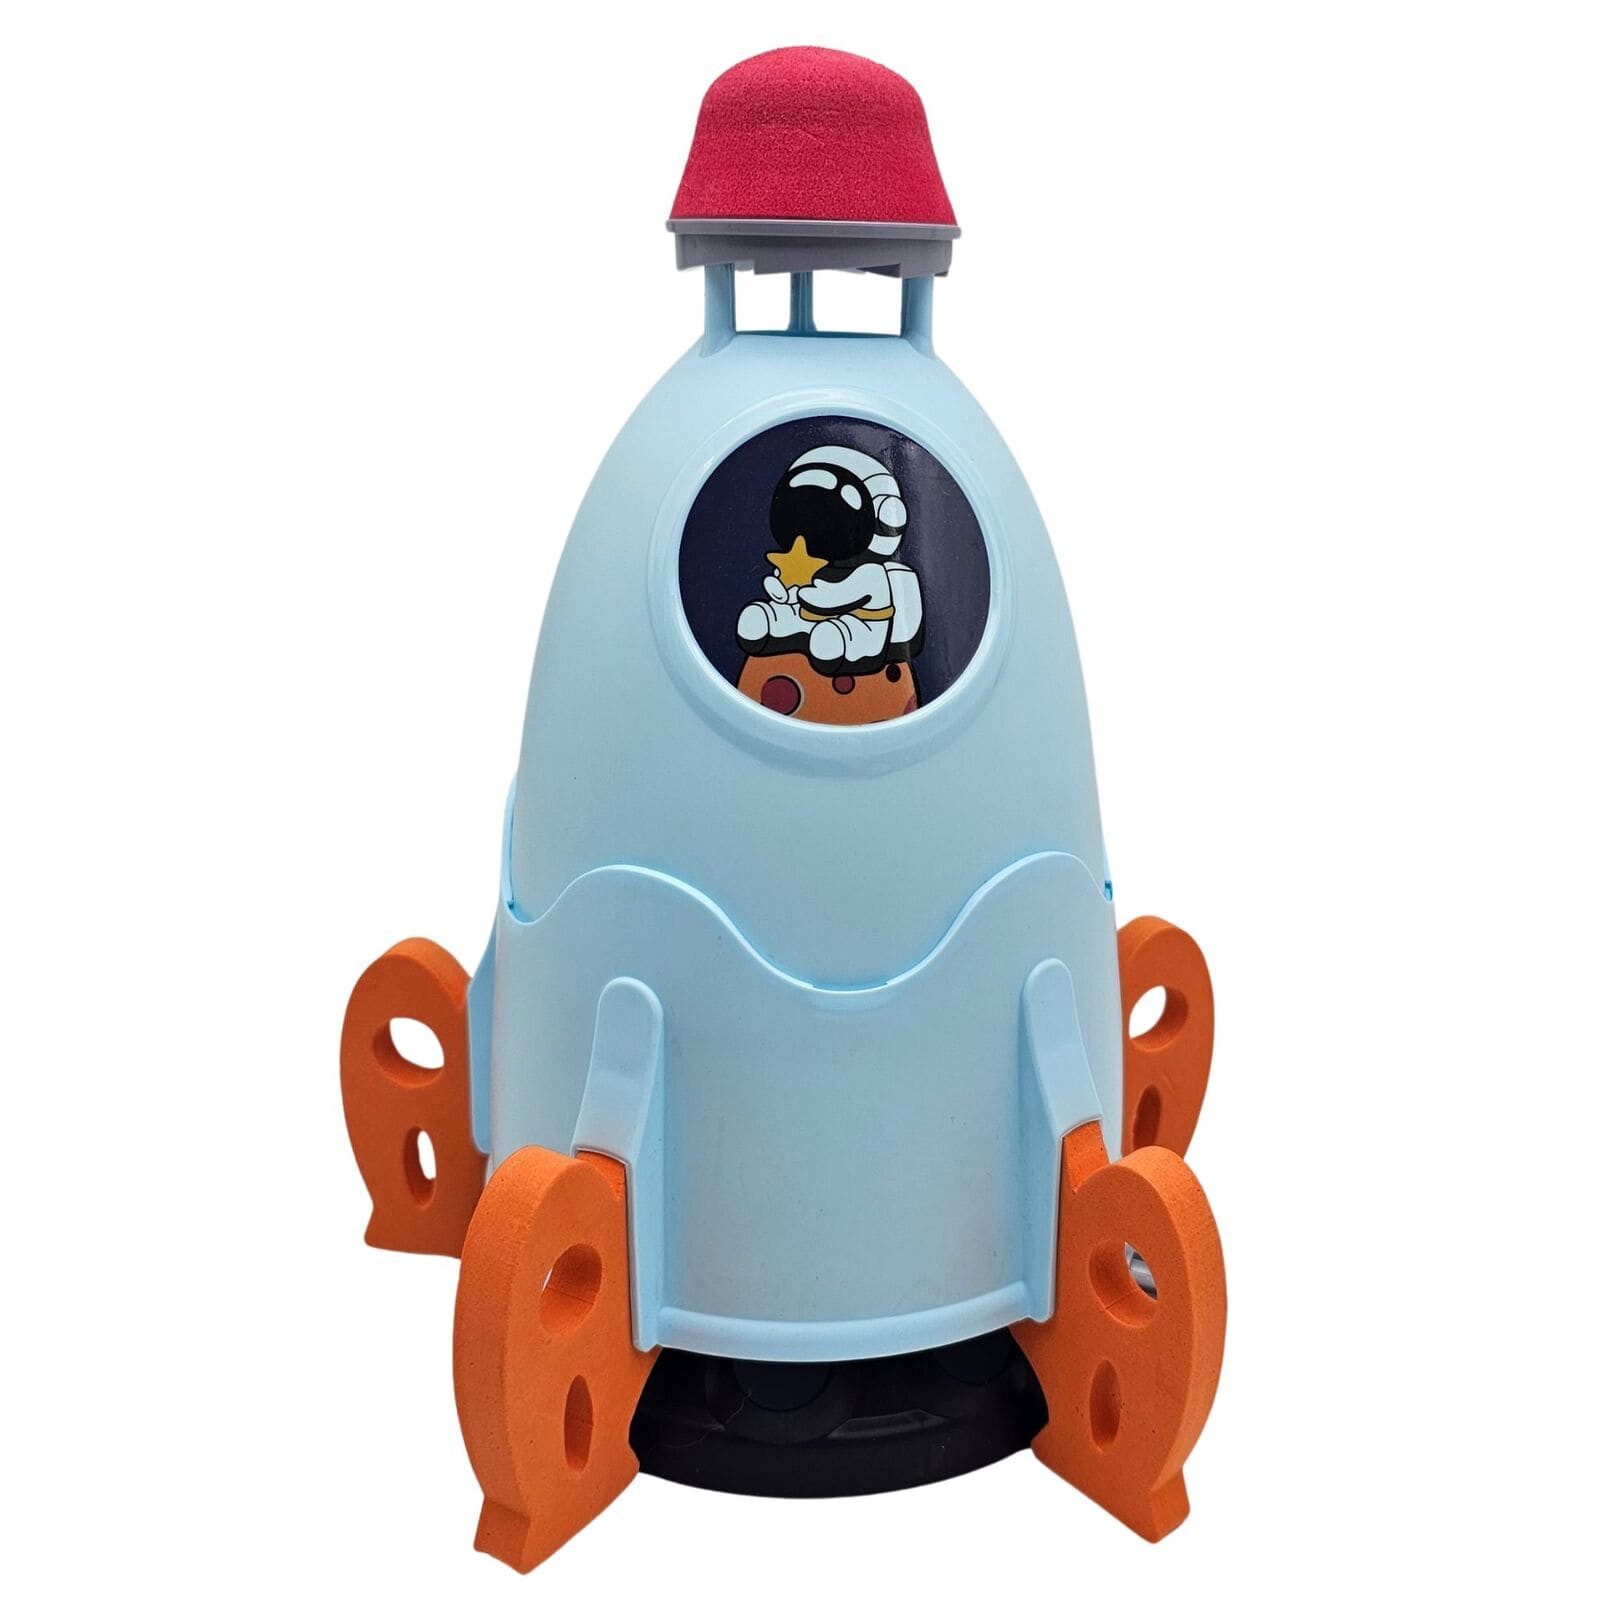 alldoro Spiel-Wassersprenkler 60216, im Raketen-Design, Outdoorspielzeug für spritzige Abkühlung im Sommer